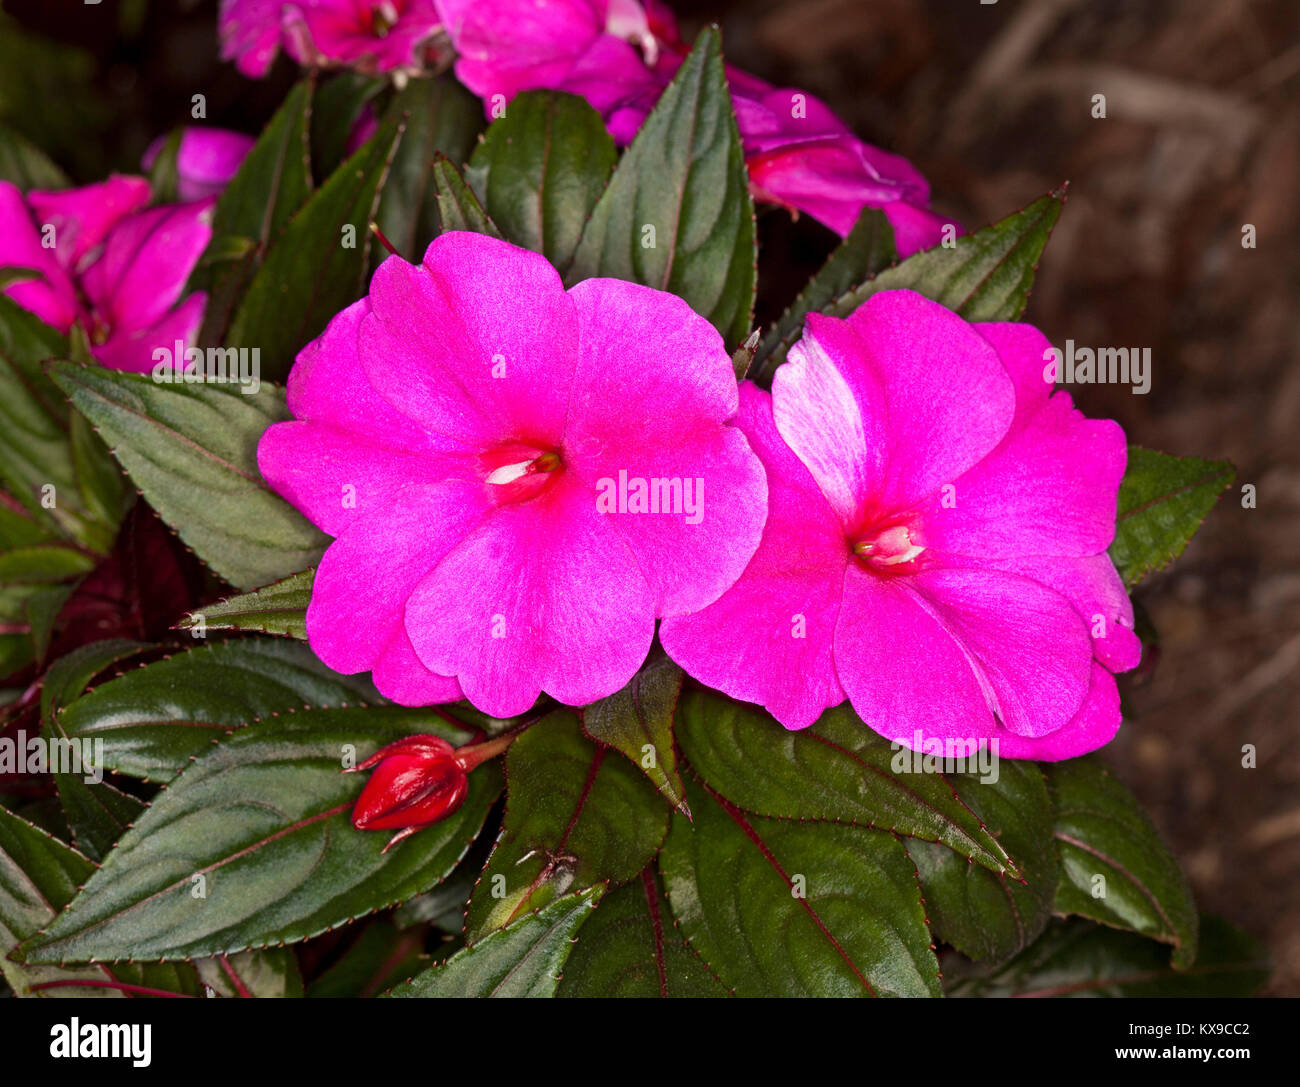 Leuchtend rosa Blüten von Neu Guinea Impatiens, Impatiens hawkerii Magnum" auf dem Hintergrund der dunkelgrünen Blätter Stockfoto